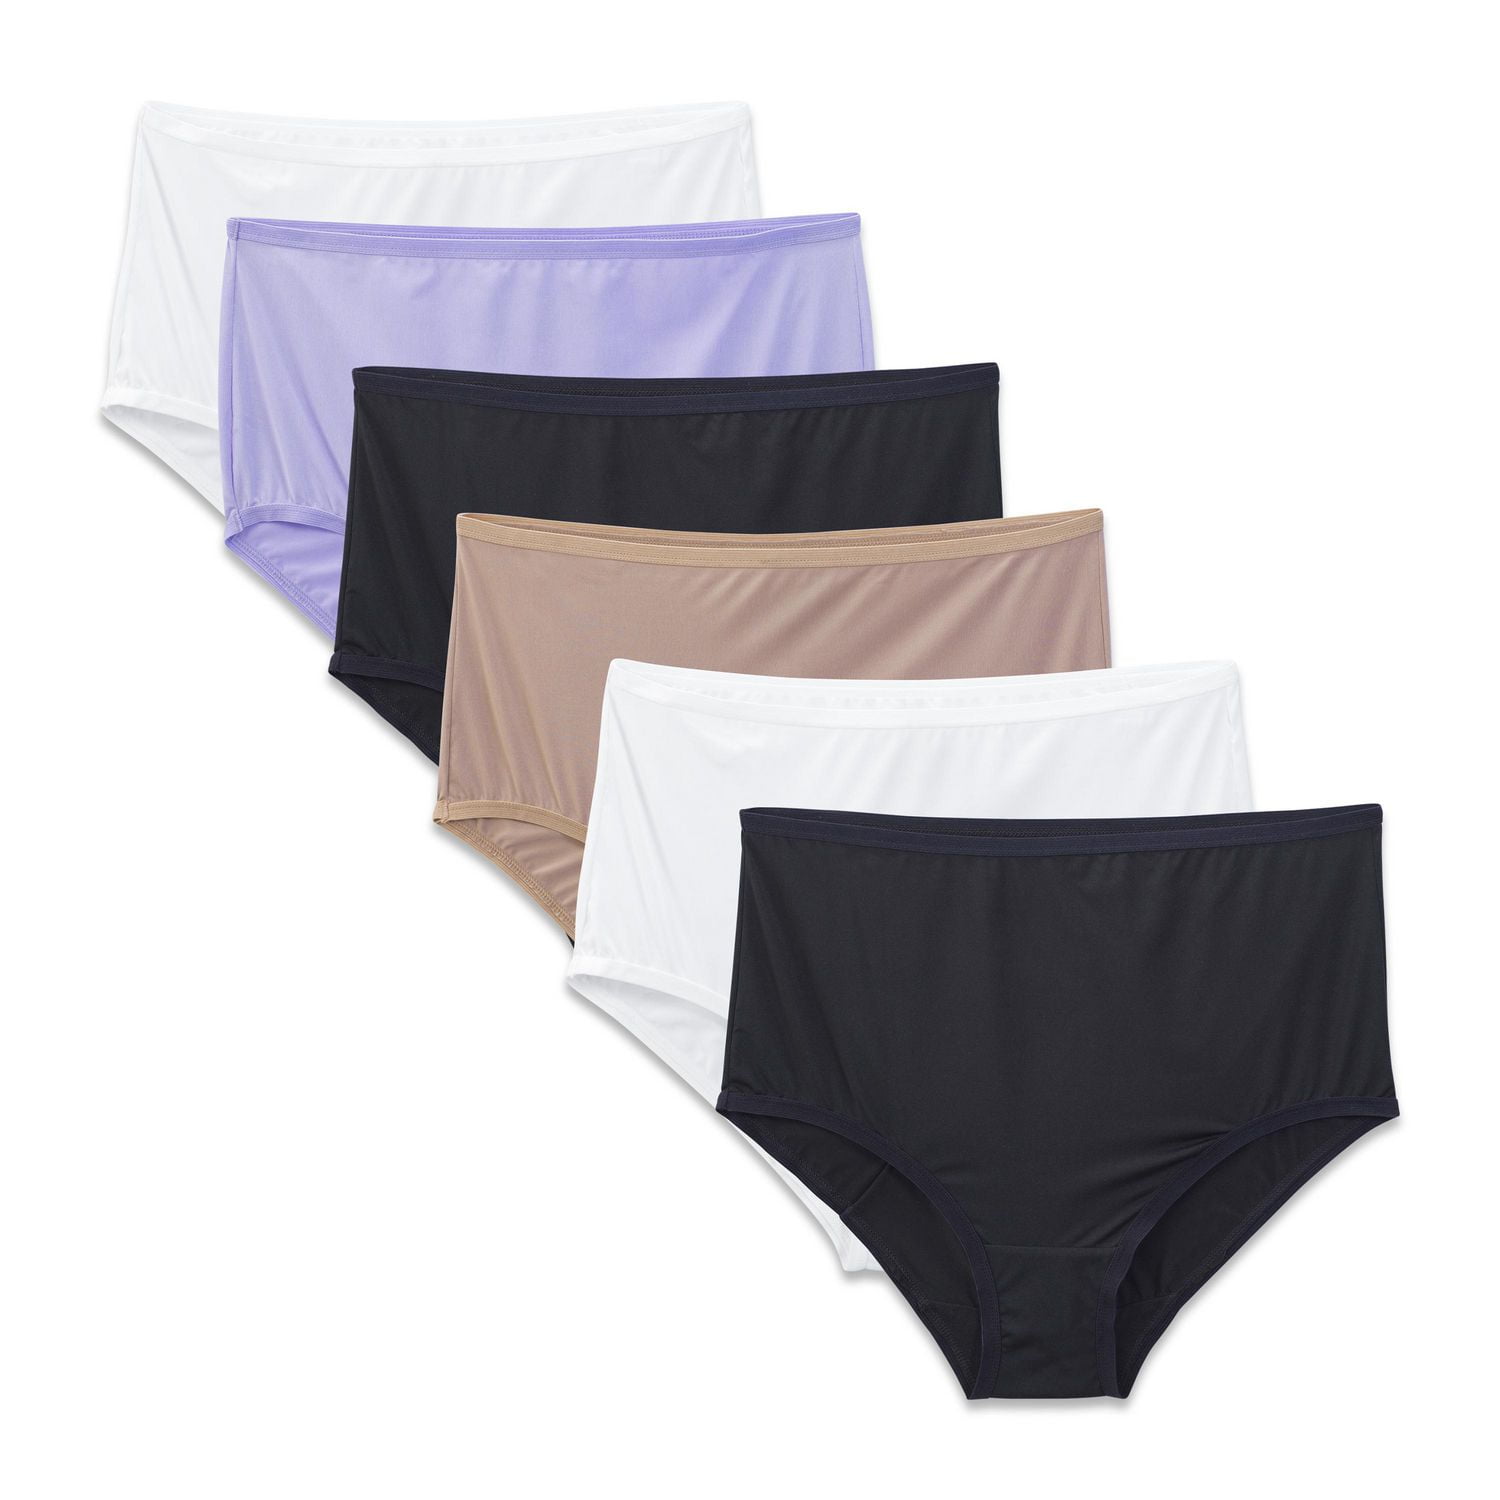  Sri Euro Micra Brief Underwear Multicolor Pack Of 6